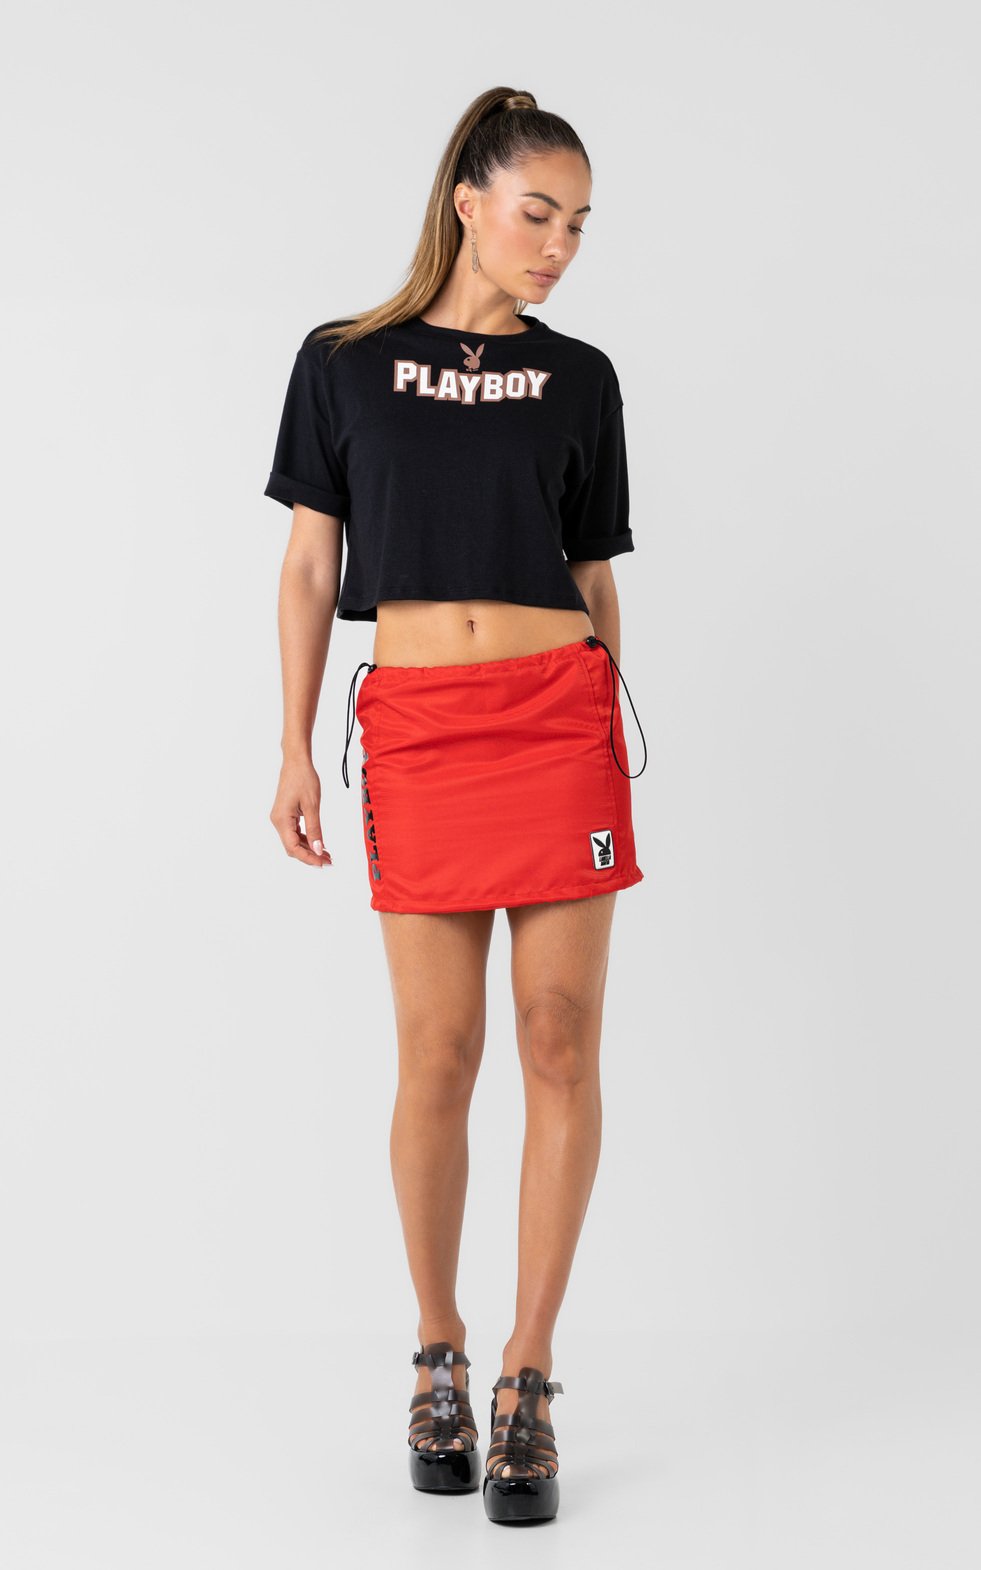 02 camiseta playboy ii pb333 preto